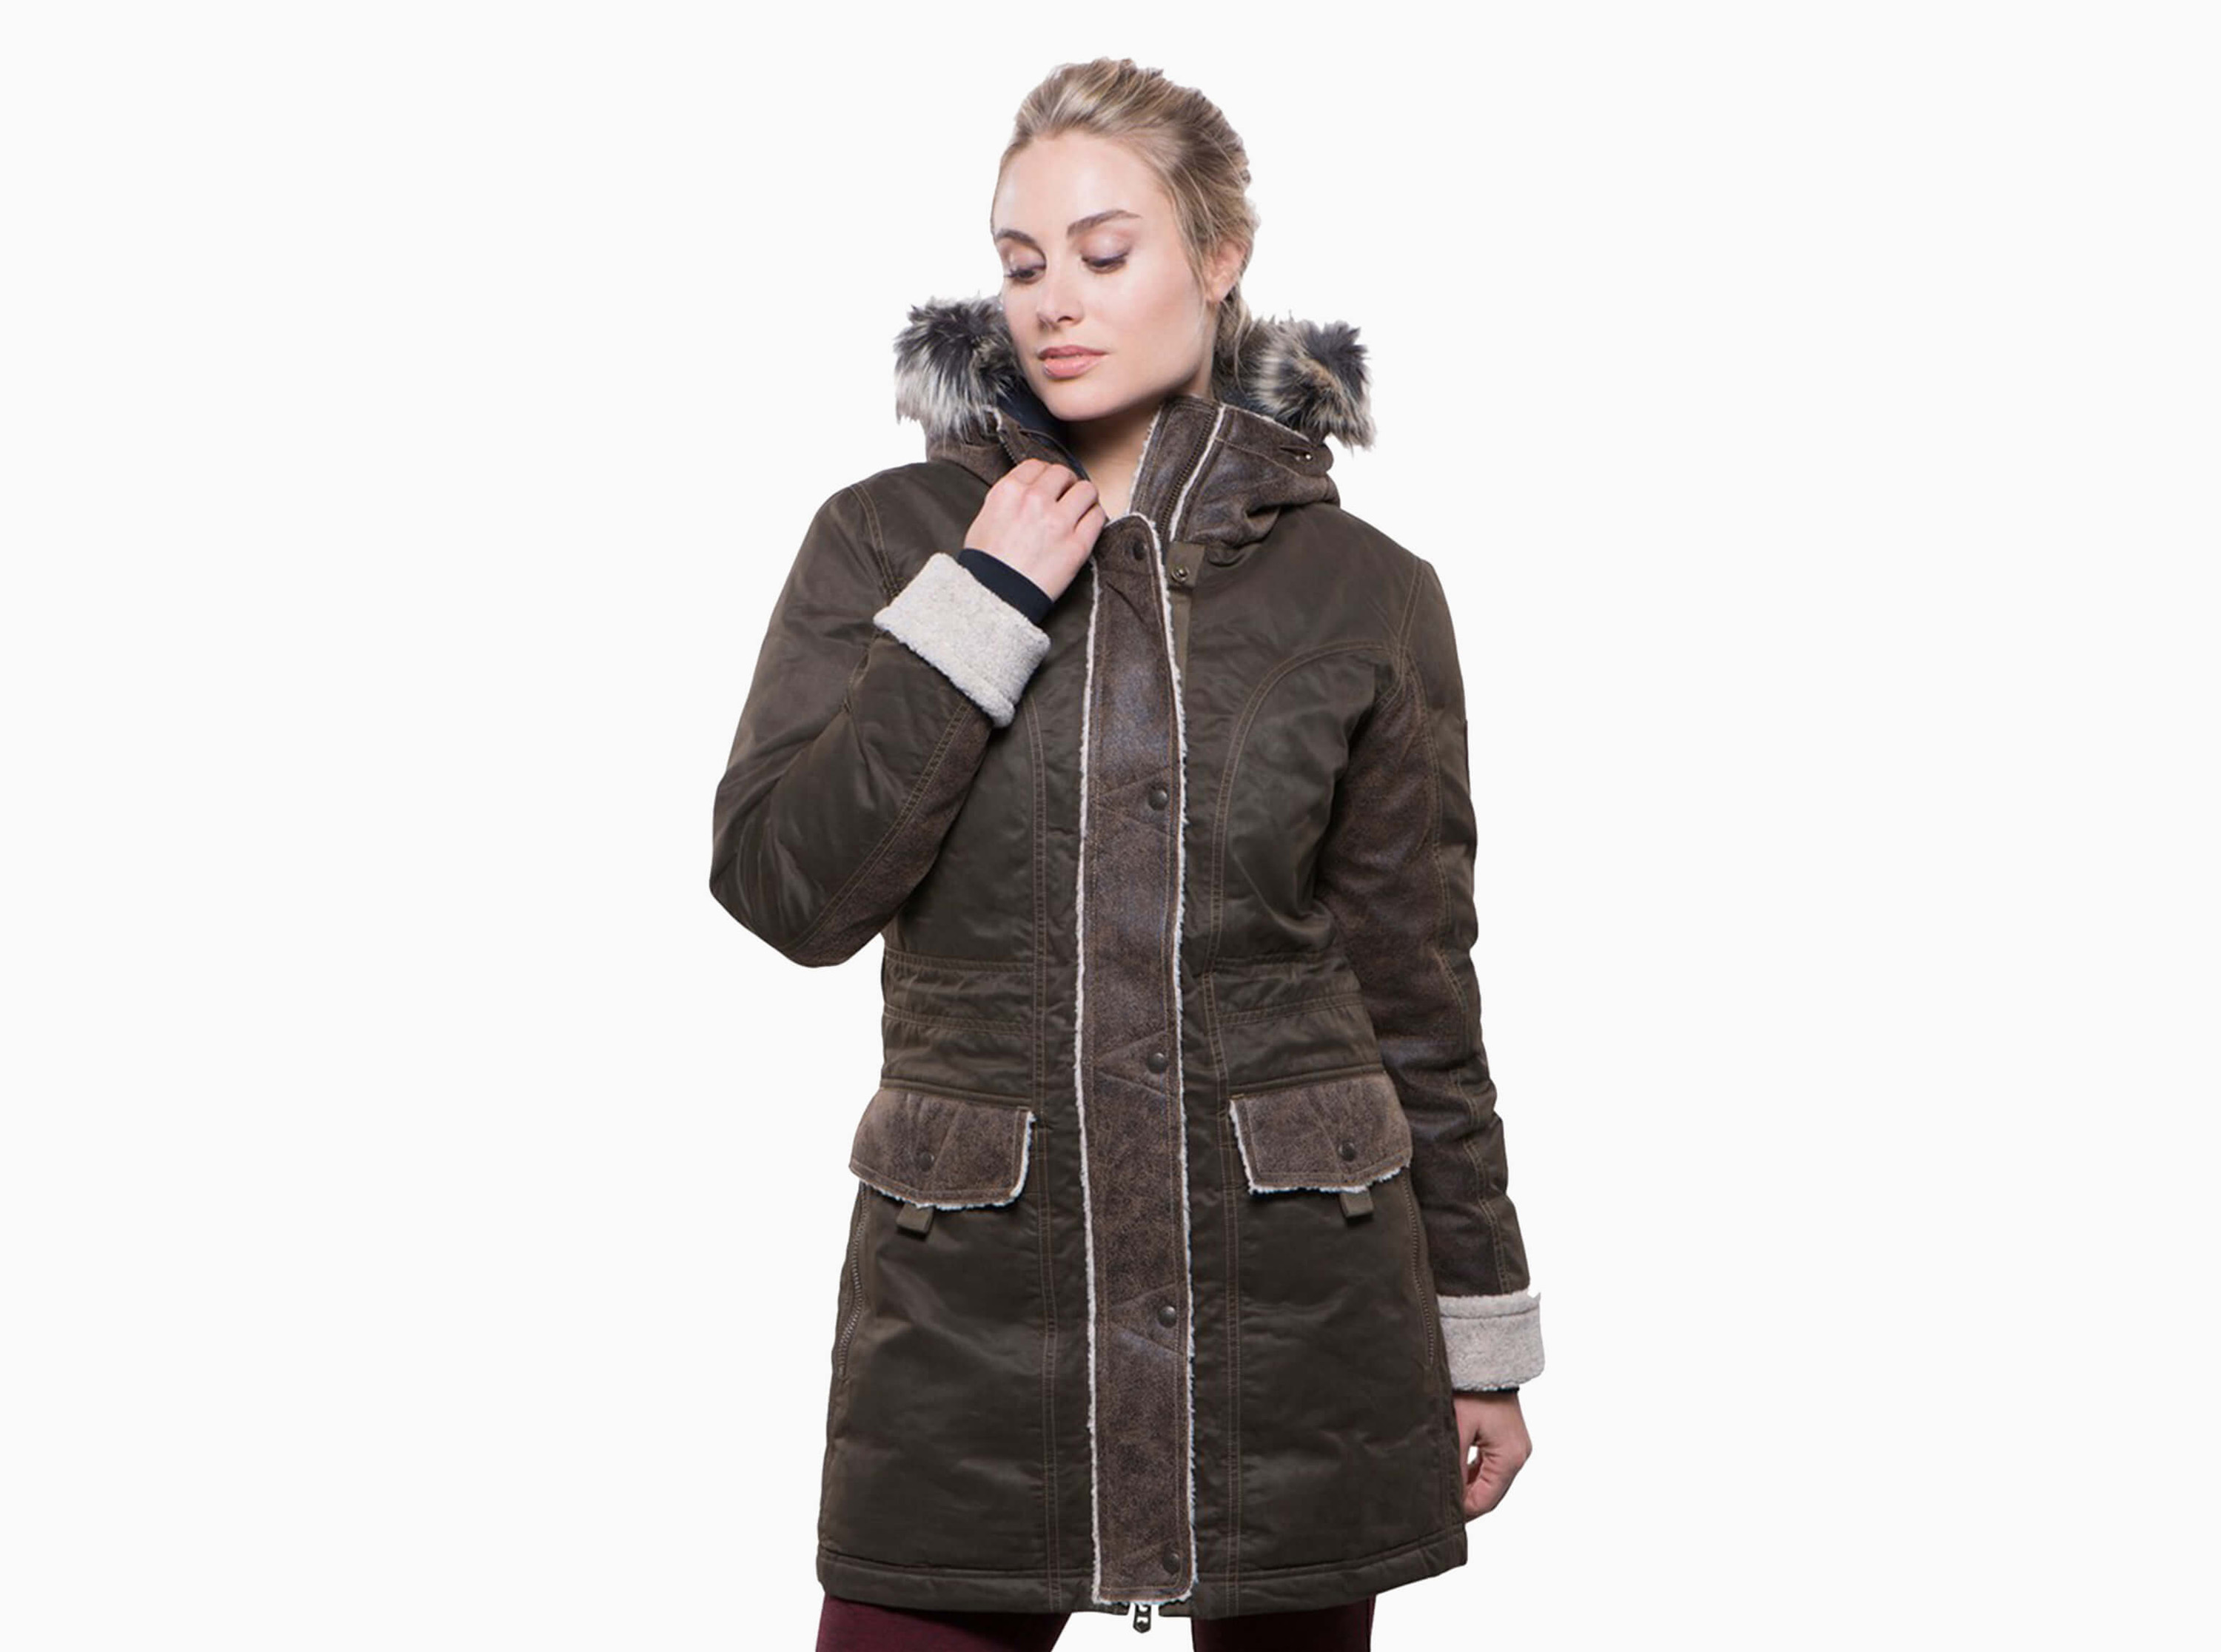 Arktik™ Jacket in Women's Outerwear, KÜHL Clothing